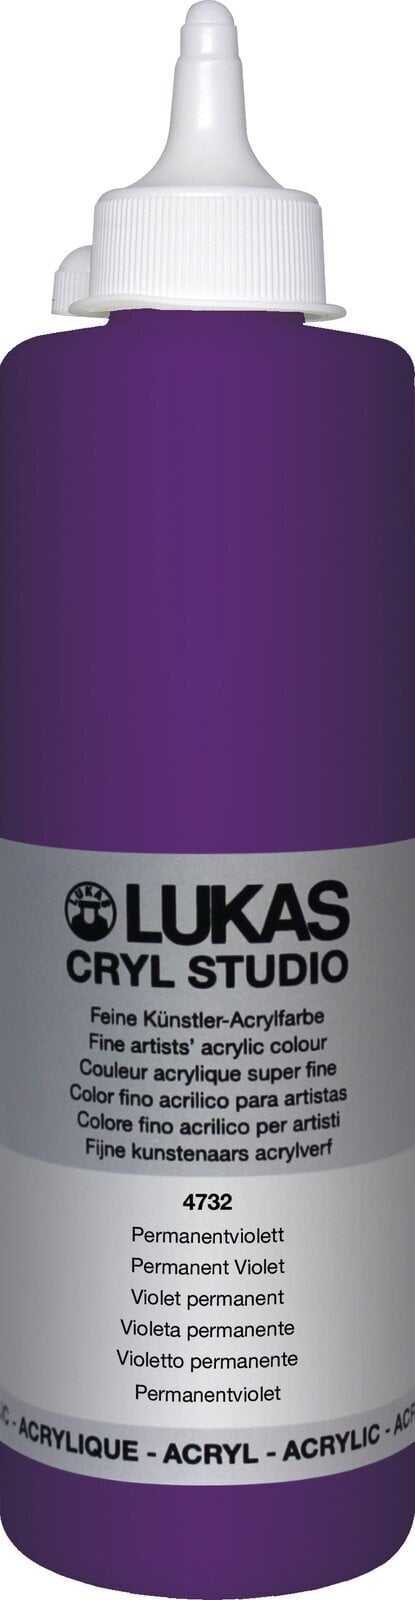 Akrylová barva Lukas Cryl Studio Akrylová barva 500 ml Permanent Violet